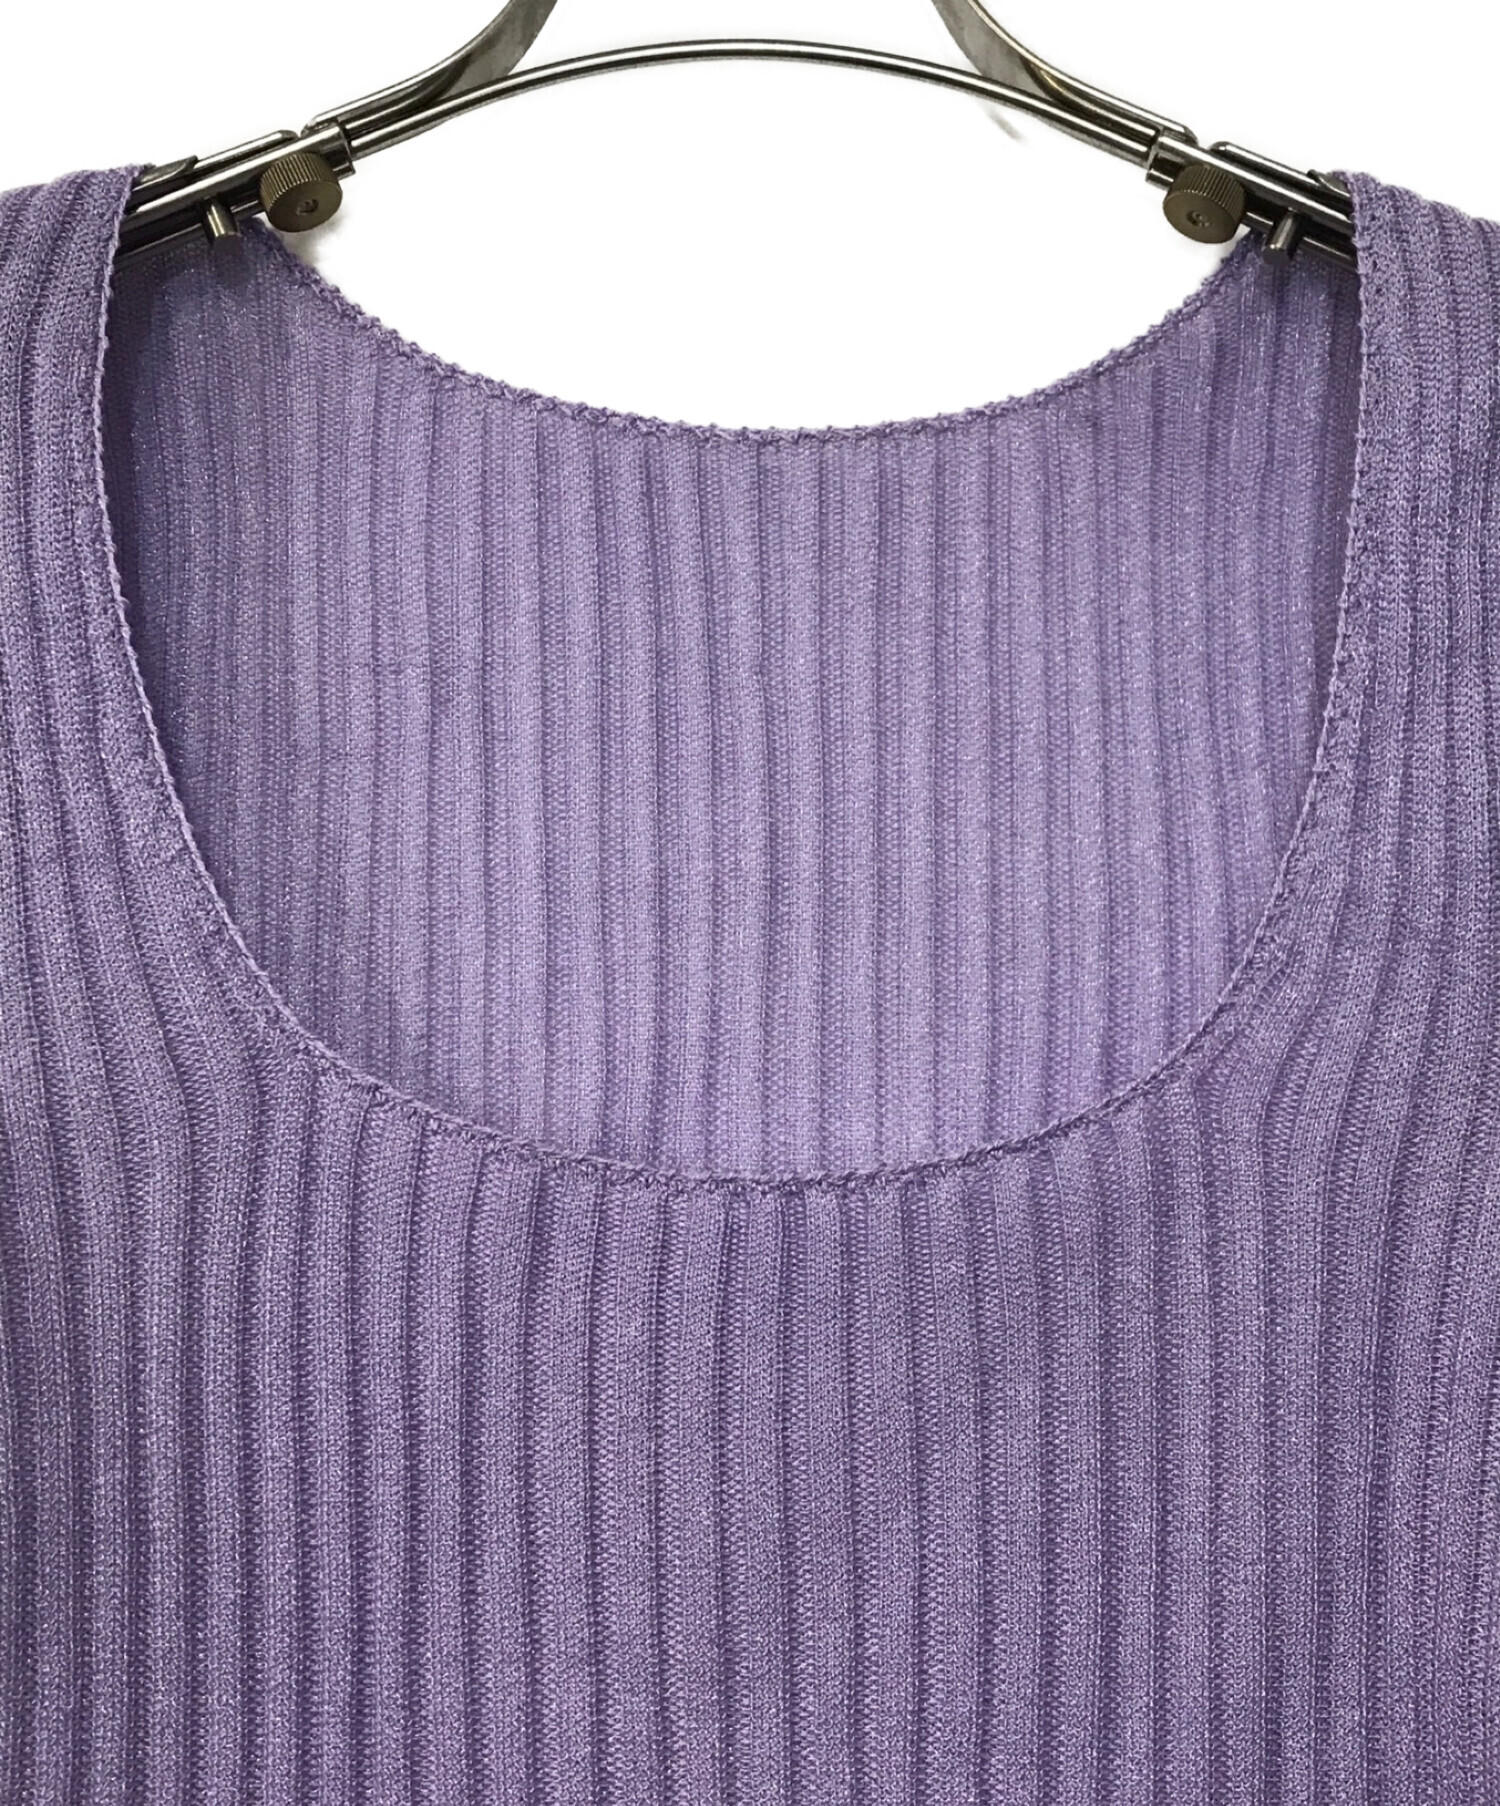 試着のみですBeaded Flared Sleeve Knit Top - purple